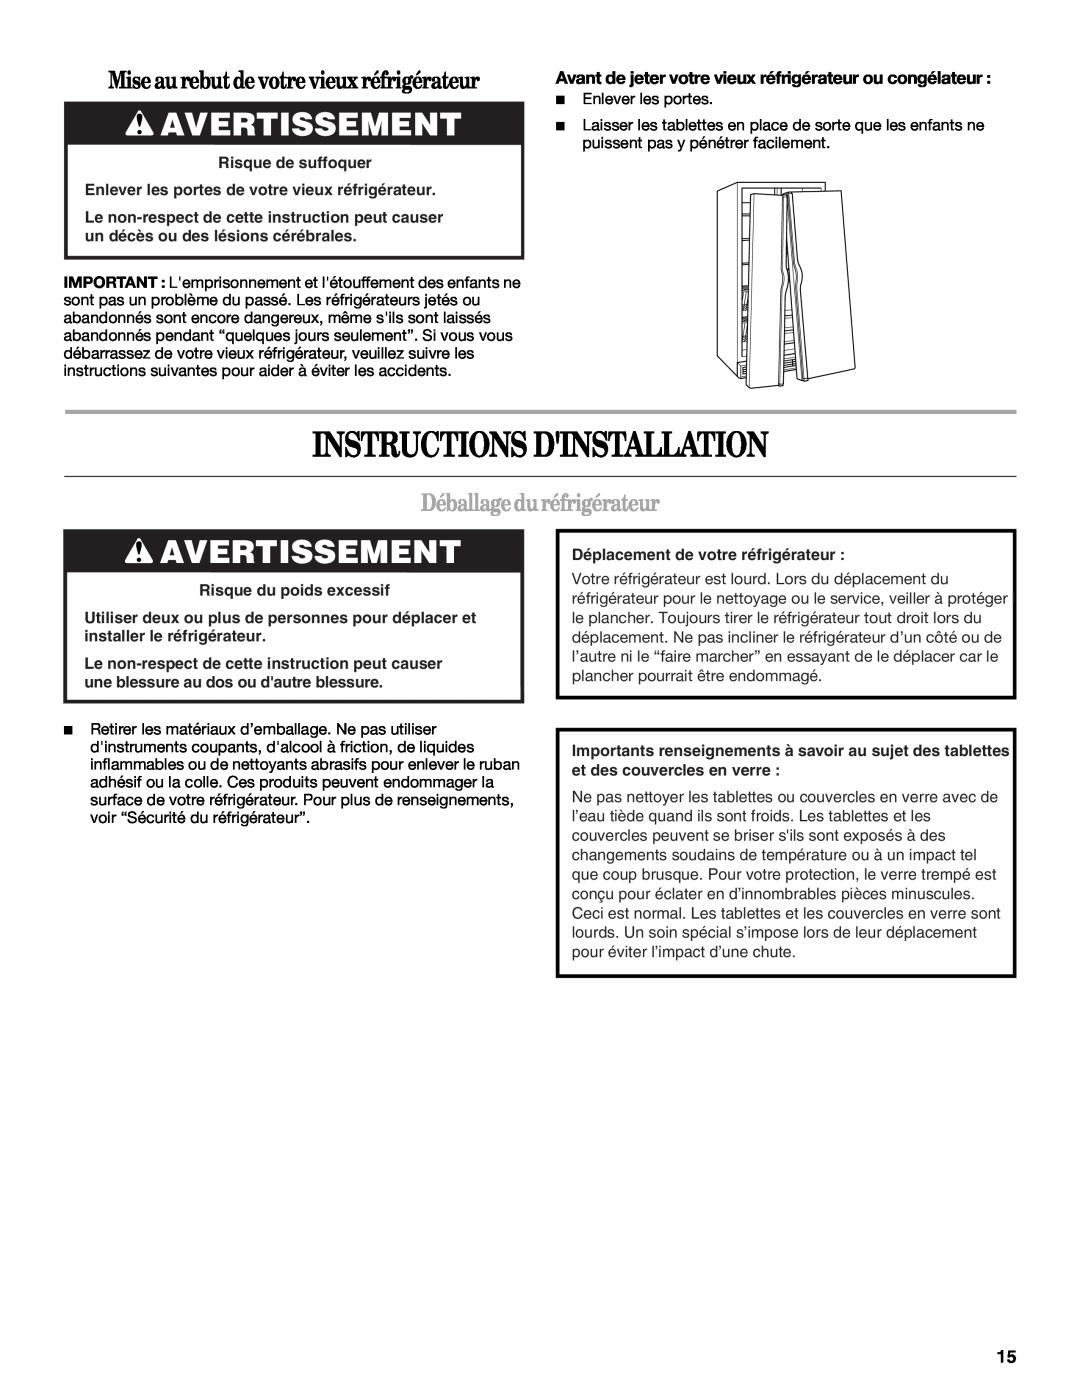 Whirlpool ED2KHAXV Instructions Dinstallation, Avertissement, Mise au rebutde votre vieux réfrigérateur 